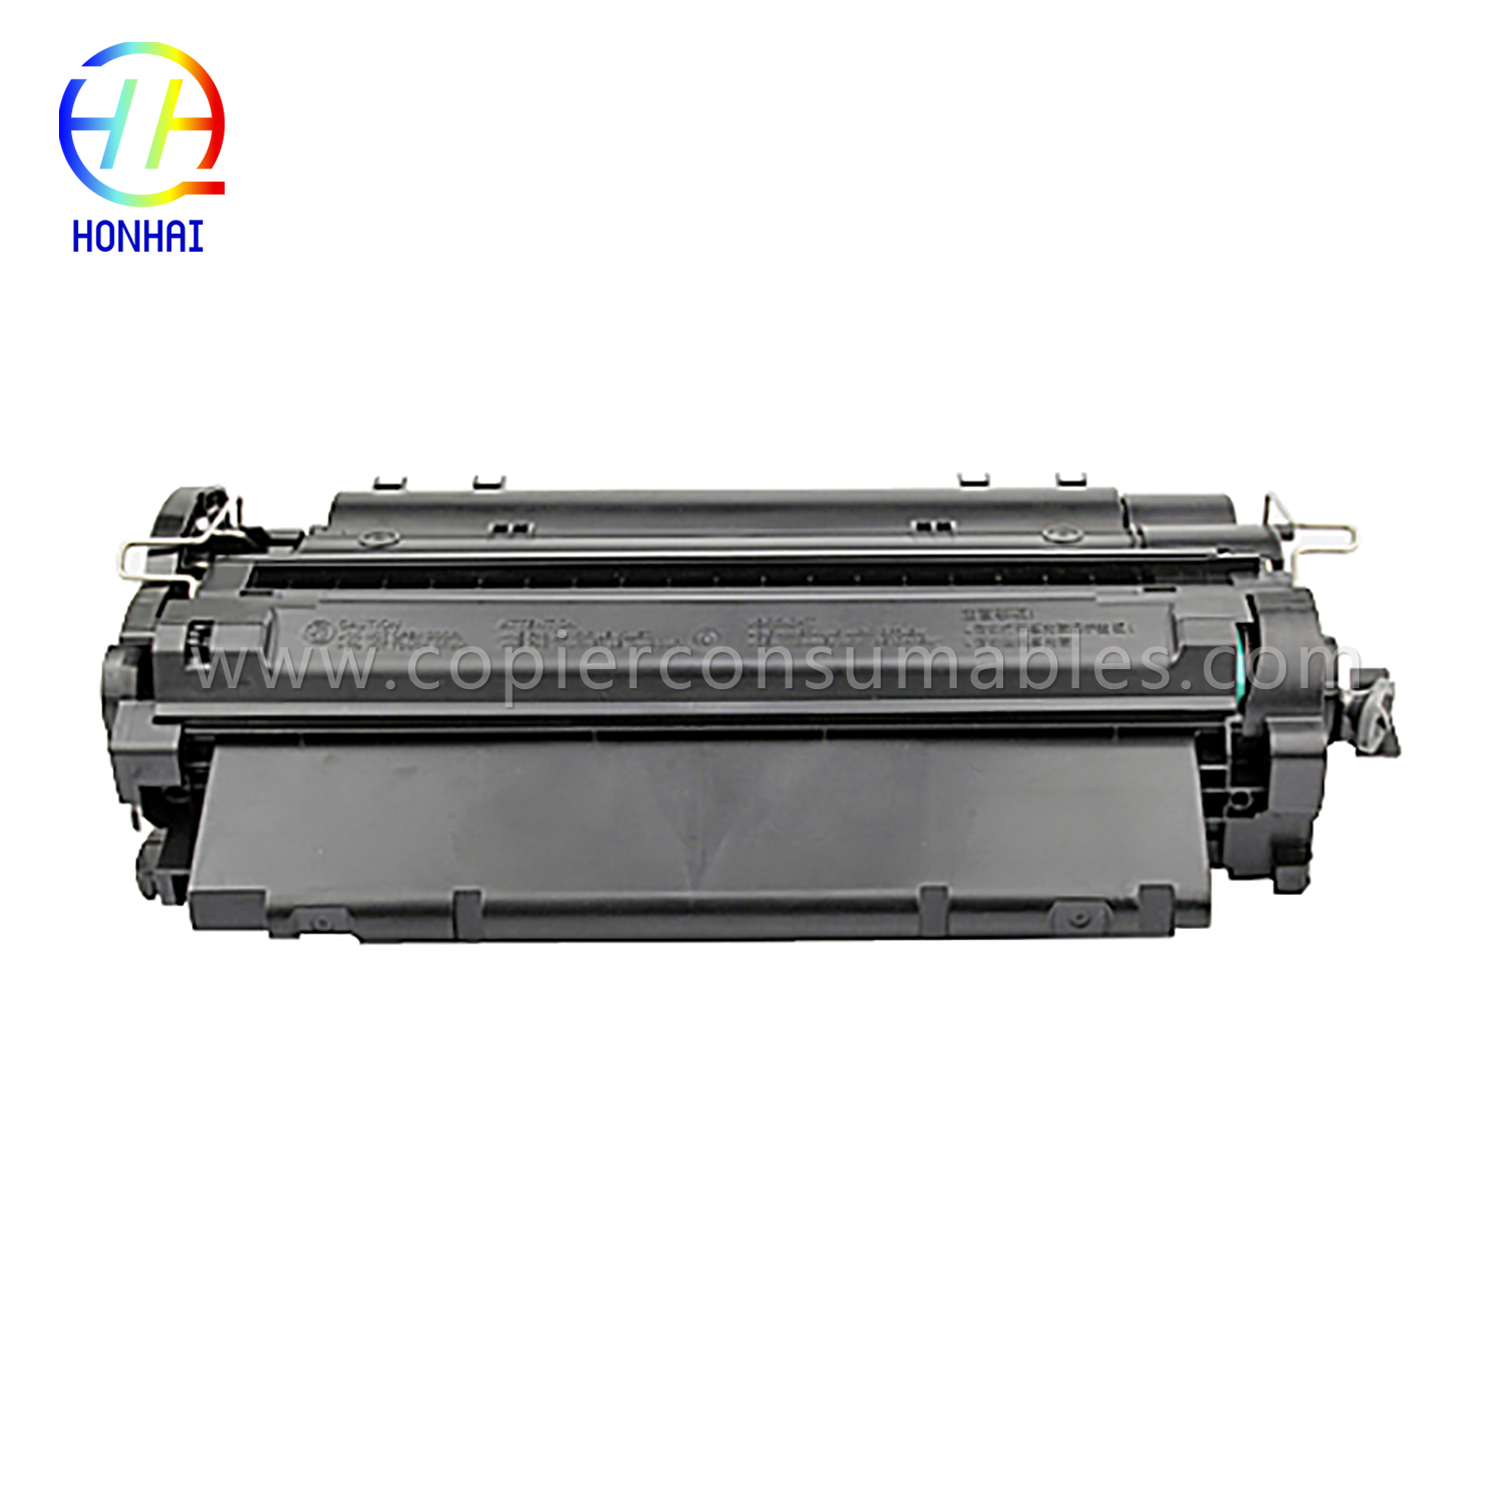 Fargetonerkassetter HP LaserJet LaserJet Pro MFP M521dn Enterprise P3015 (CE255X) -1 (2) 拷贝